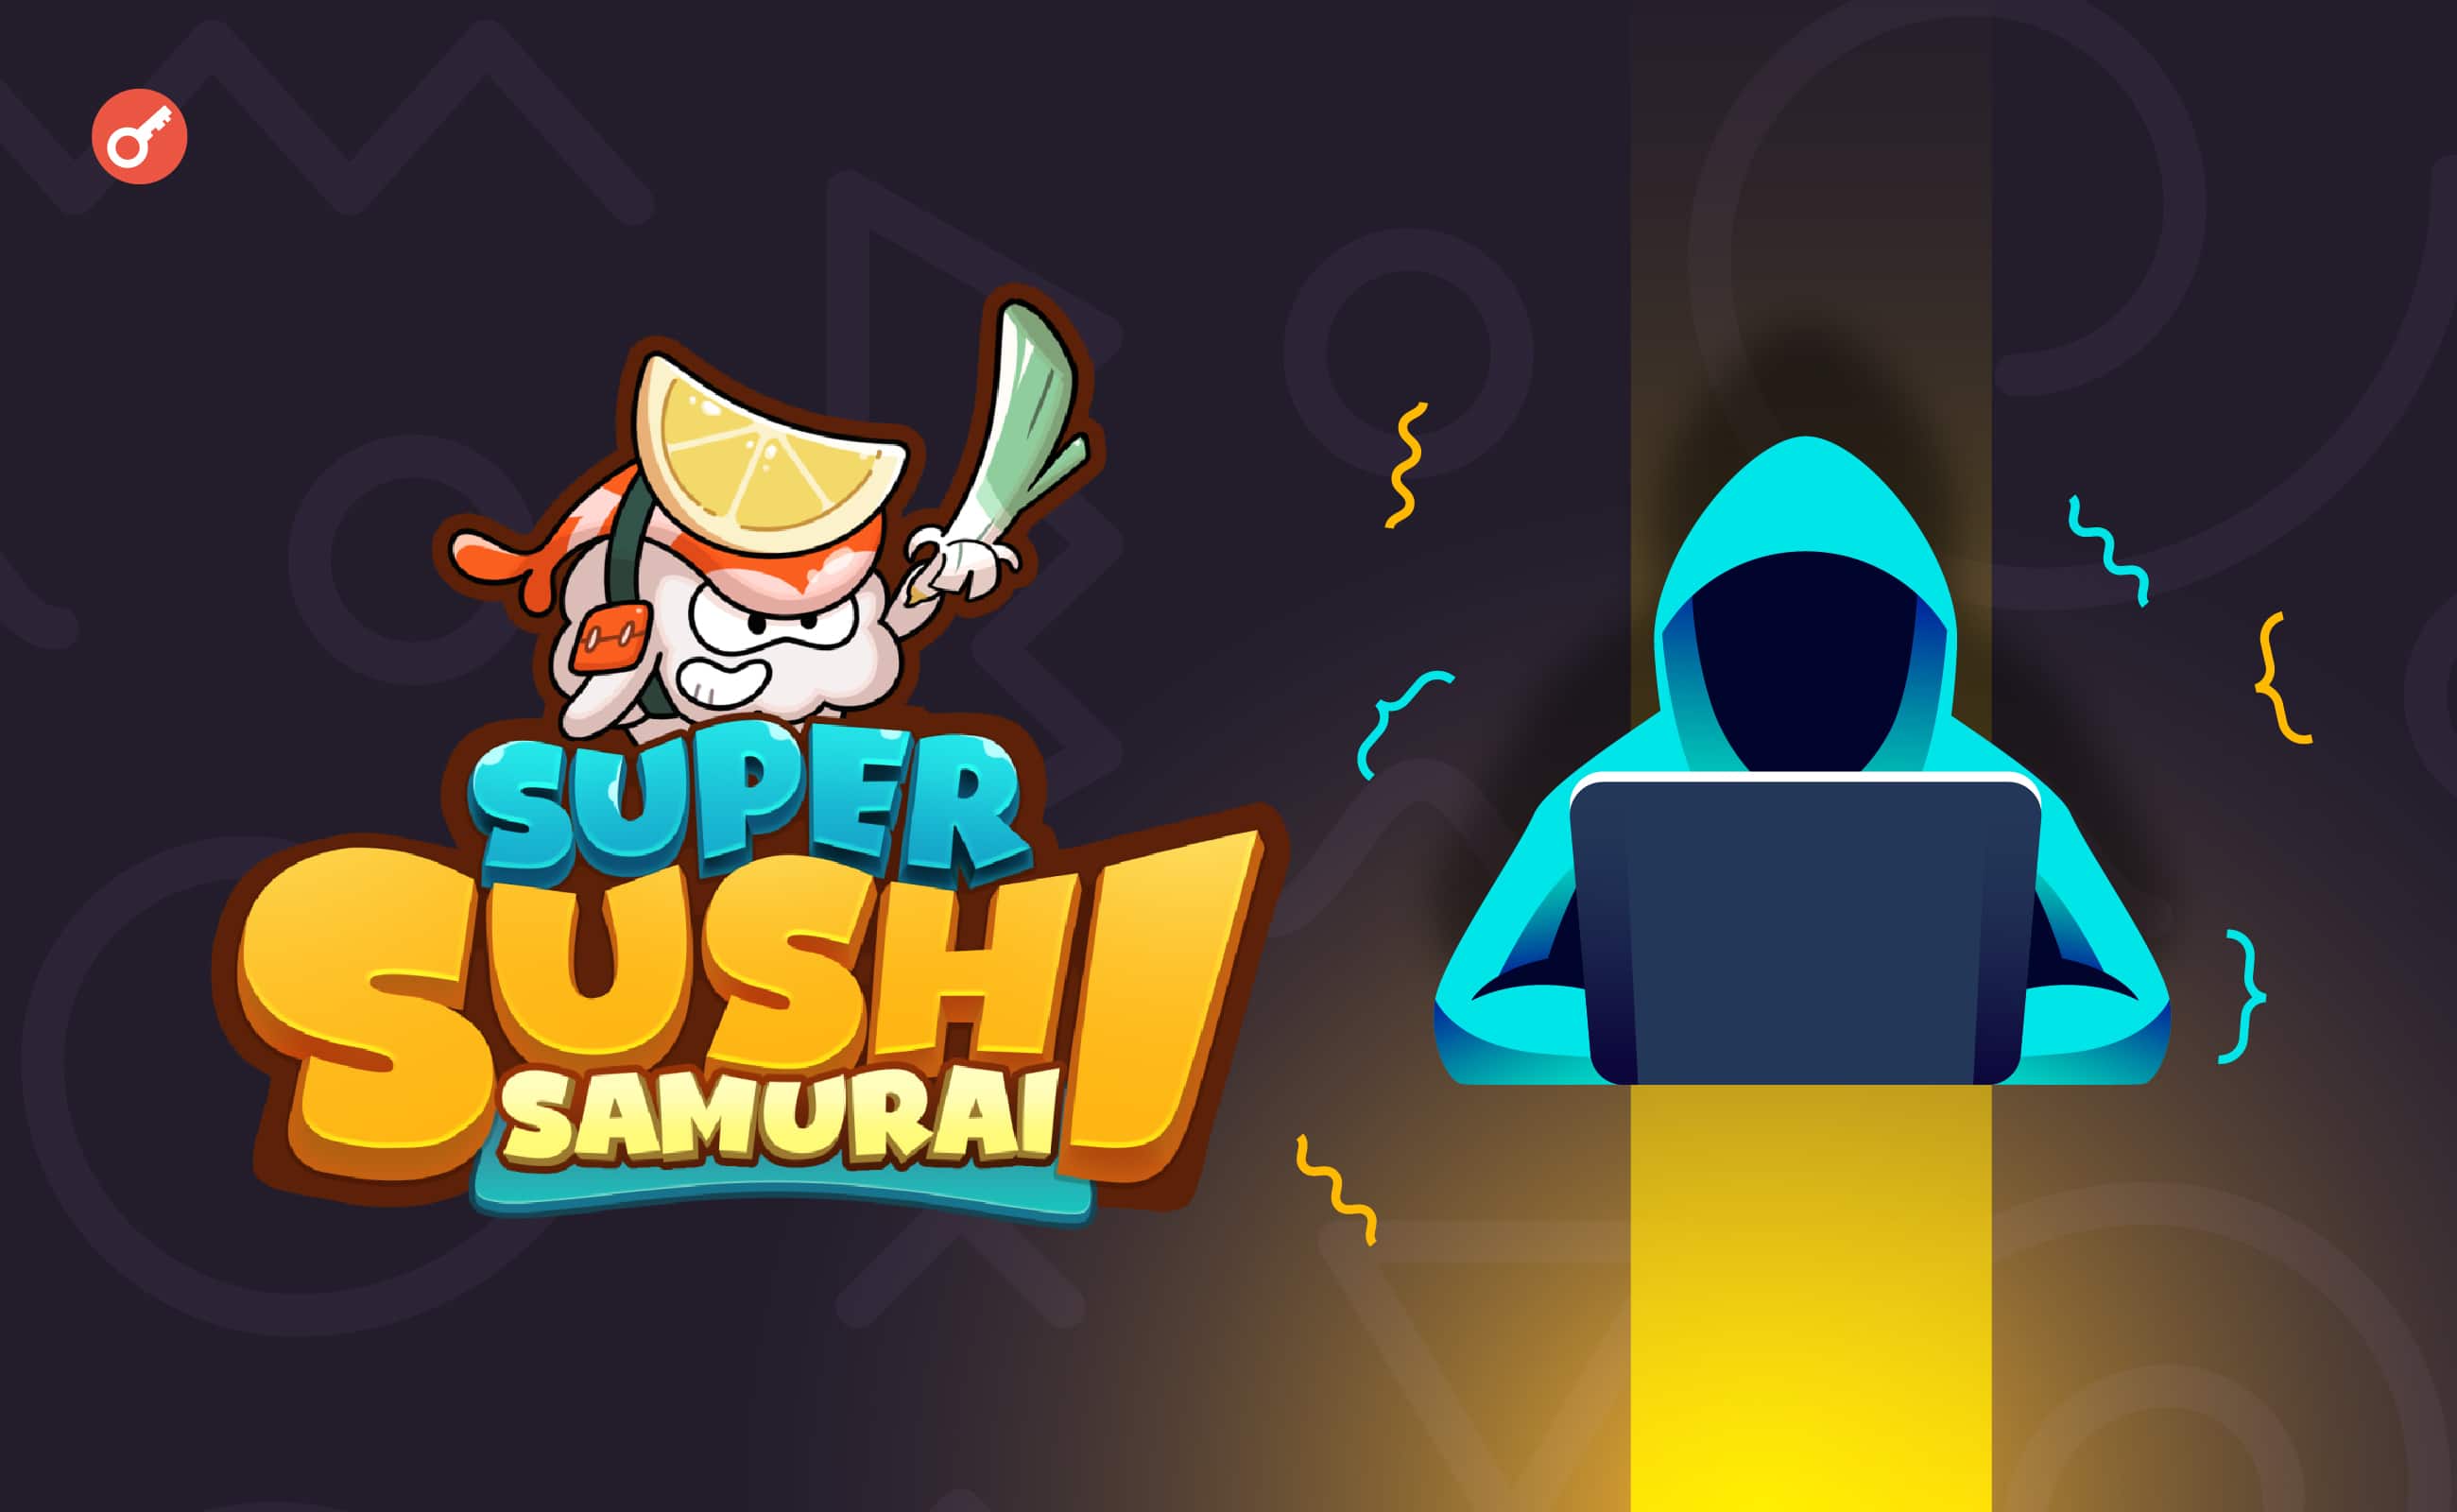 Проект Super Sushi Samurai на базе Blast пострадал от хакерской атаки на $4,6 млн. Заглавный коллаж новости.